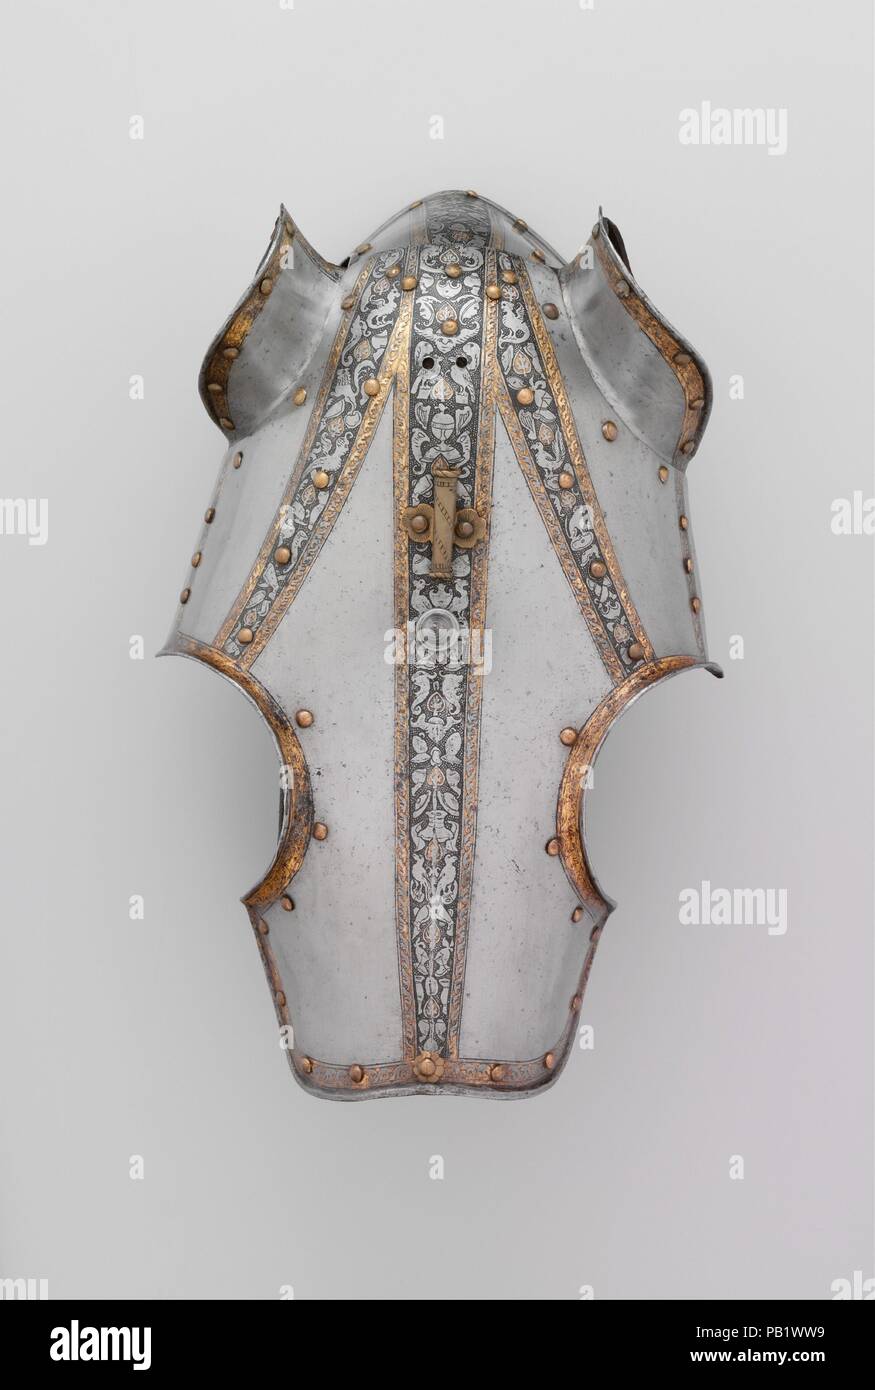 Half-Shaffron (Tête de cheval) de la Défense. Culture : l'italien, probablement à Milan. Dimensions : H. 15 1/4 in. (38,7 cm) ; W. 10 3/4 in. (27,3 cm) ; D. 7. (17,8 cm) ; WT. 2 lb. 11 oz. (1208 g). Date : ca. 1570-80. Cette shaffron correspond à une armure italienne pour l'homme dans le Metropolitan Museum (acc. no. 14.25.717) c'est aujourd'hui monté à cheval dans le cadre de l'Equestrian group dans le hall principal de l'Armes et galeries. Les bandes minces de trophées d'armes gravées, de vases, d'oiseaux et de créatures grotesques sur un sol noirci et en pointillés sont typiques pour la décoration de l'armure italienne de la période. Le shaffron Banque D'Images